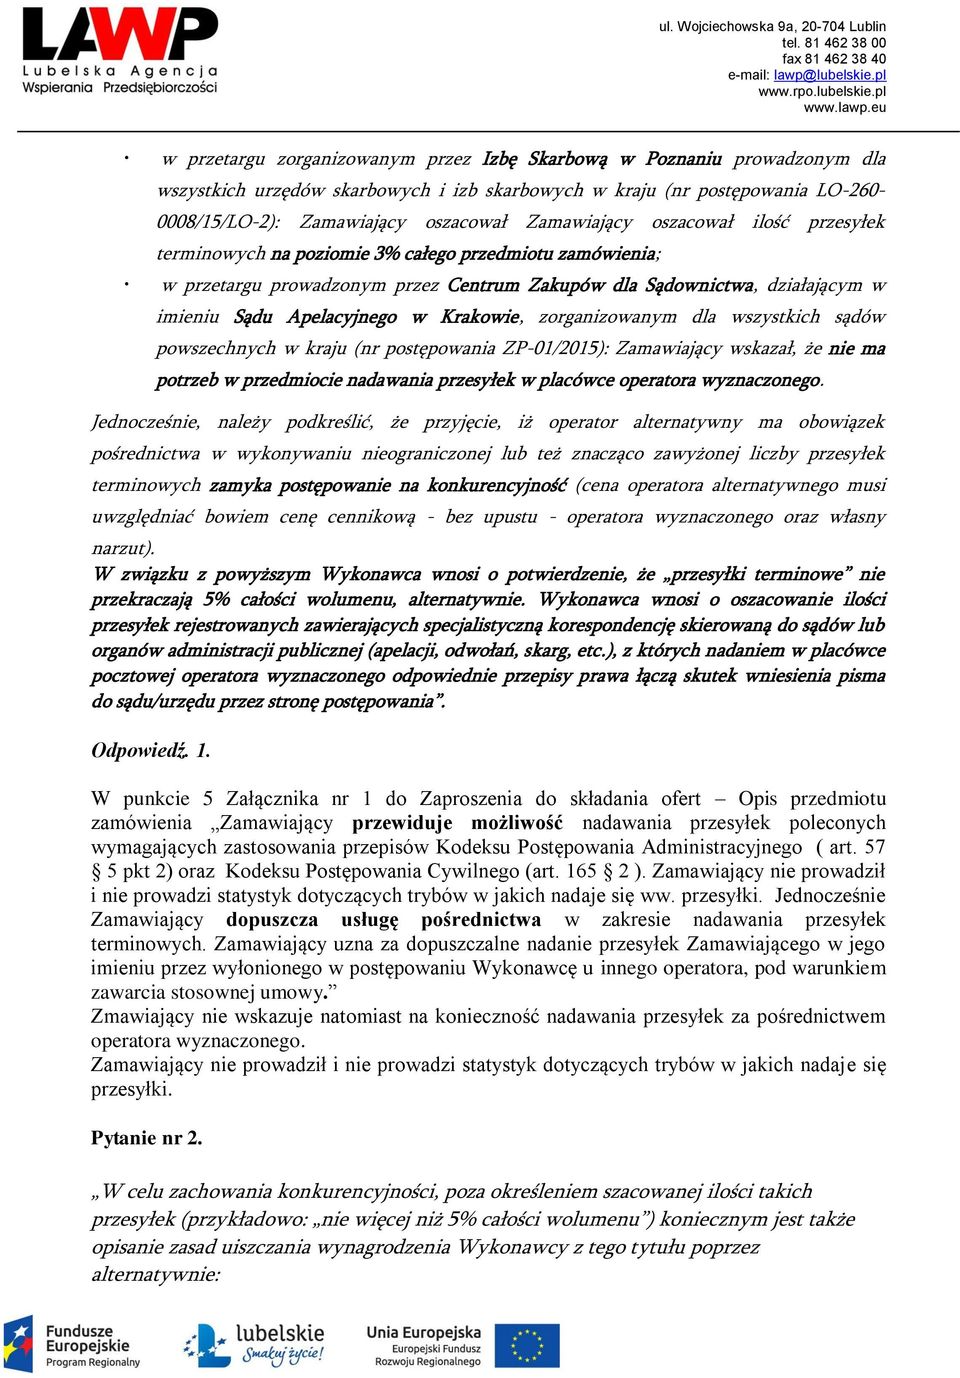 Krakowie, zorganizowanym dla wszystkich sądów powszechnych w kraju (nr postępowania ZP-01/2015): Zamawiający wskazał, że nie ma potrzeb w przedmiocie nadawania przesyłek w placówce operatora